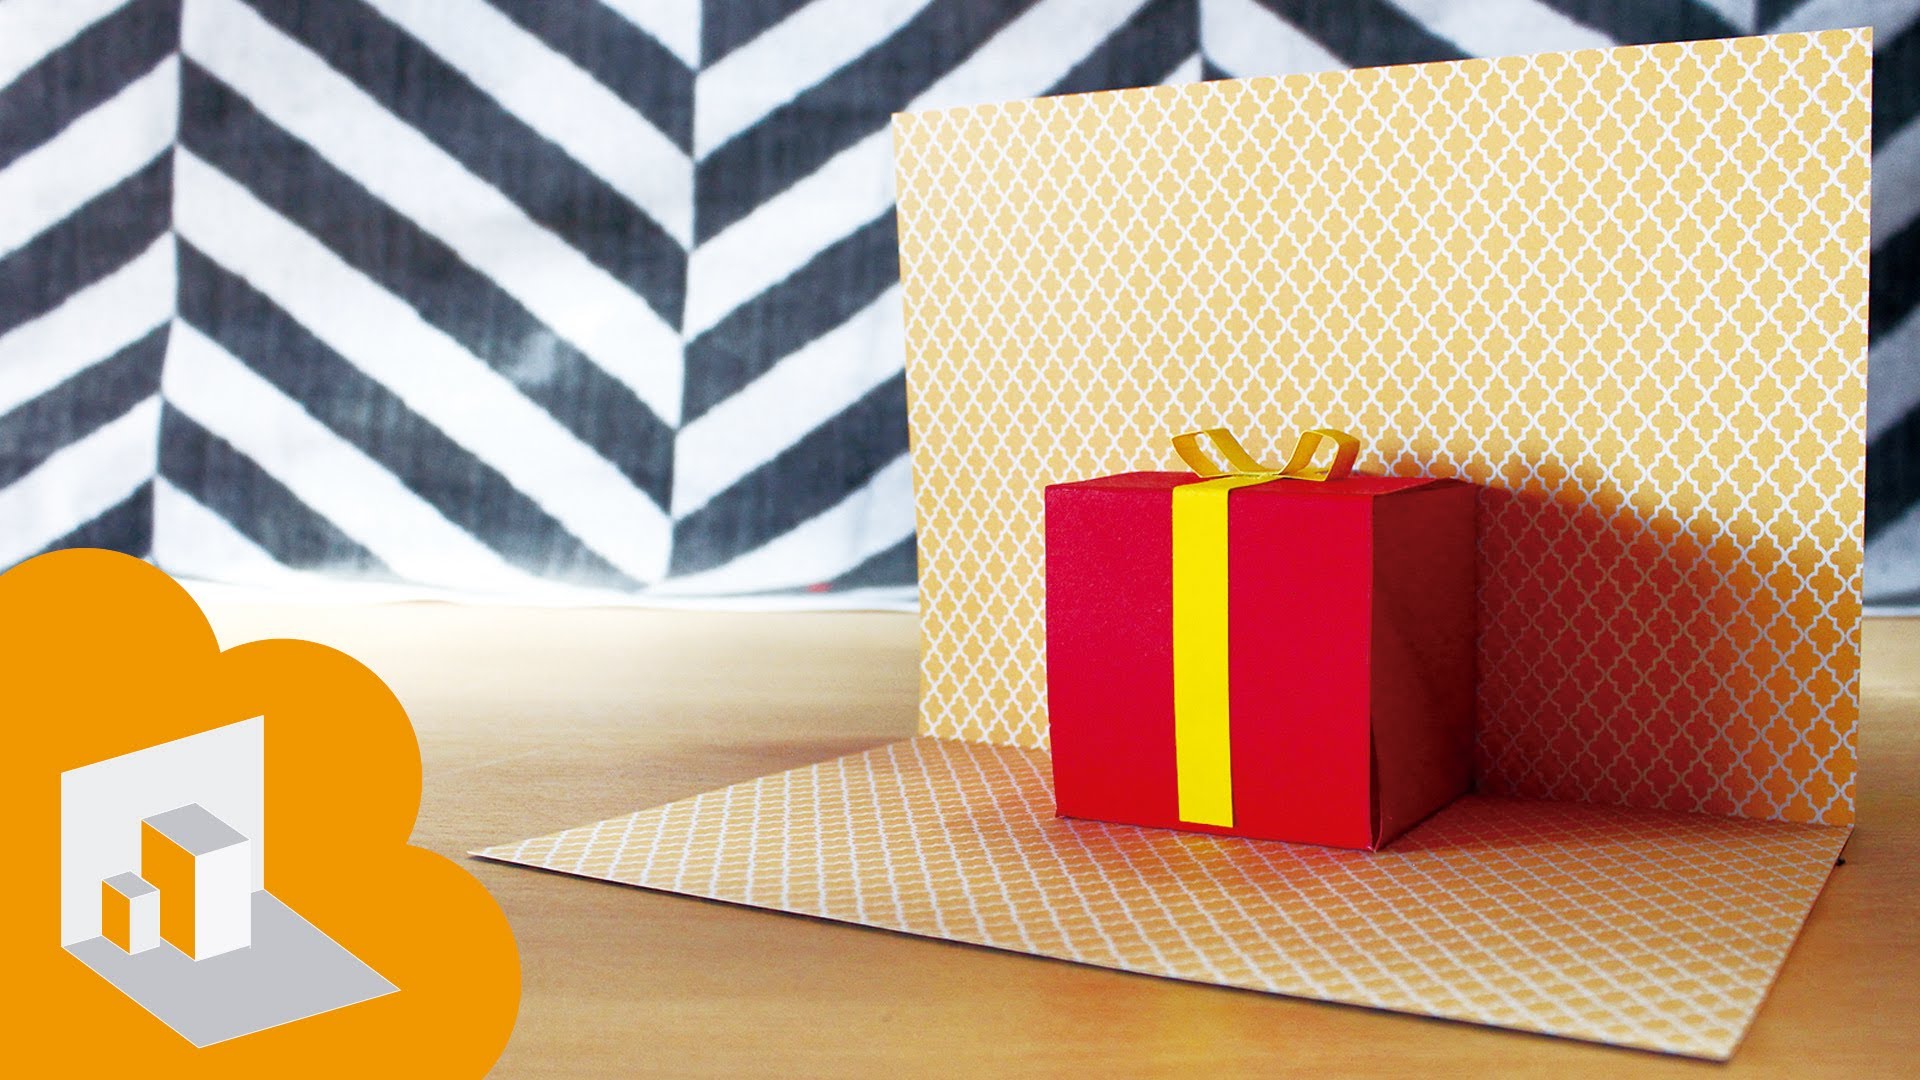 Bạn đang muốn tìm kiếm một cách mới lạ để chúc mừng sinh nhật người thân? Hãy thử tạo ra một thiệp sinh nhật 3D bằng hộp quà được thiết kế độc đáo và đầy sáng tạo. Bạn sẽ không chỉ gửi tặng món quà đặc biệt mà còn là sự cổ vũ cho người nhận khiêu vũ trong niềm vui của ngày sinh nhật.